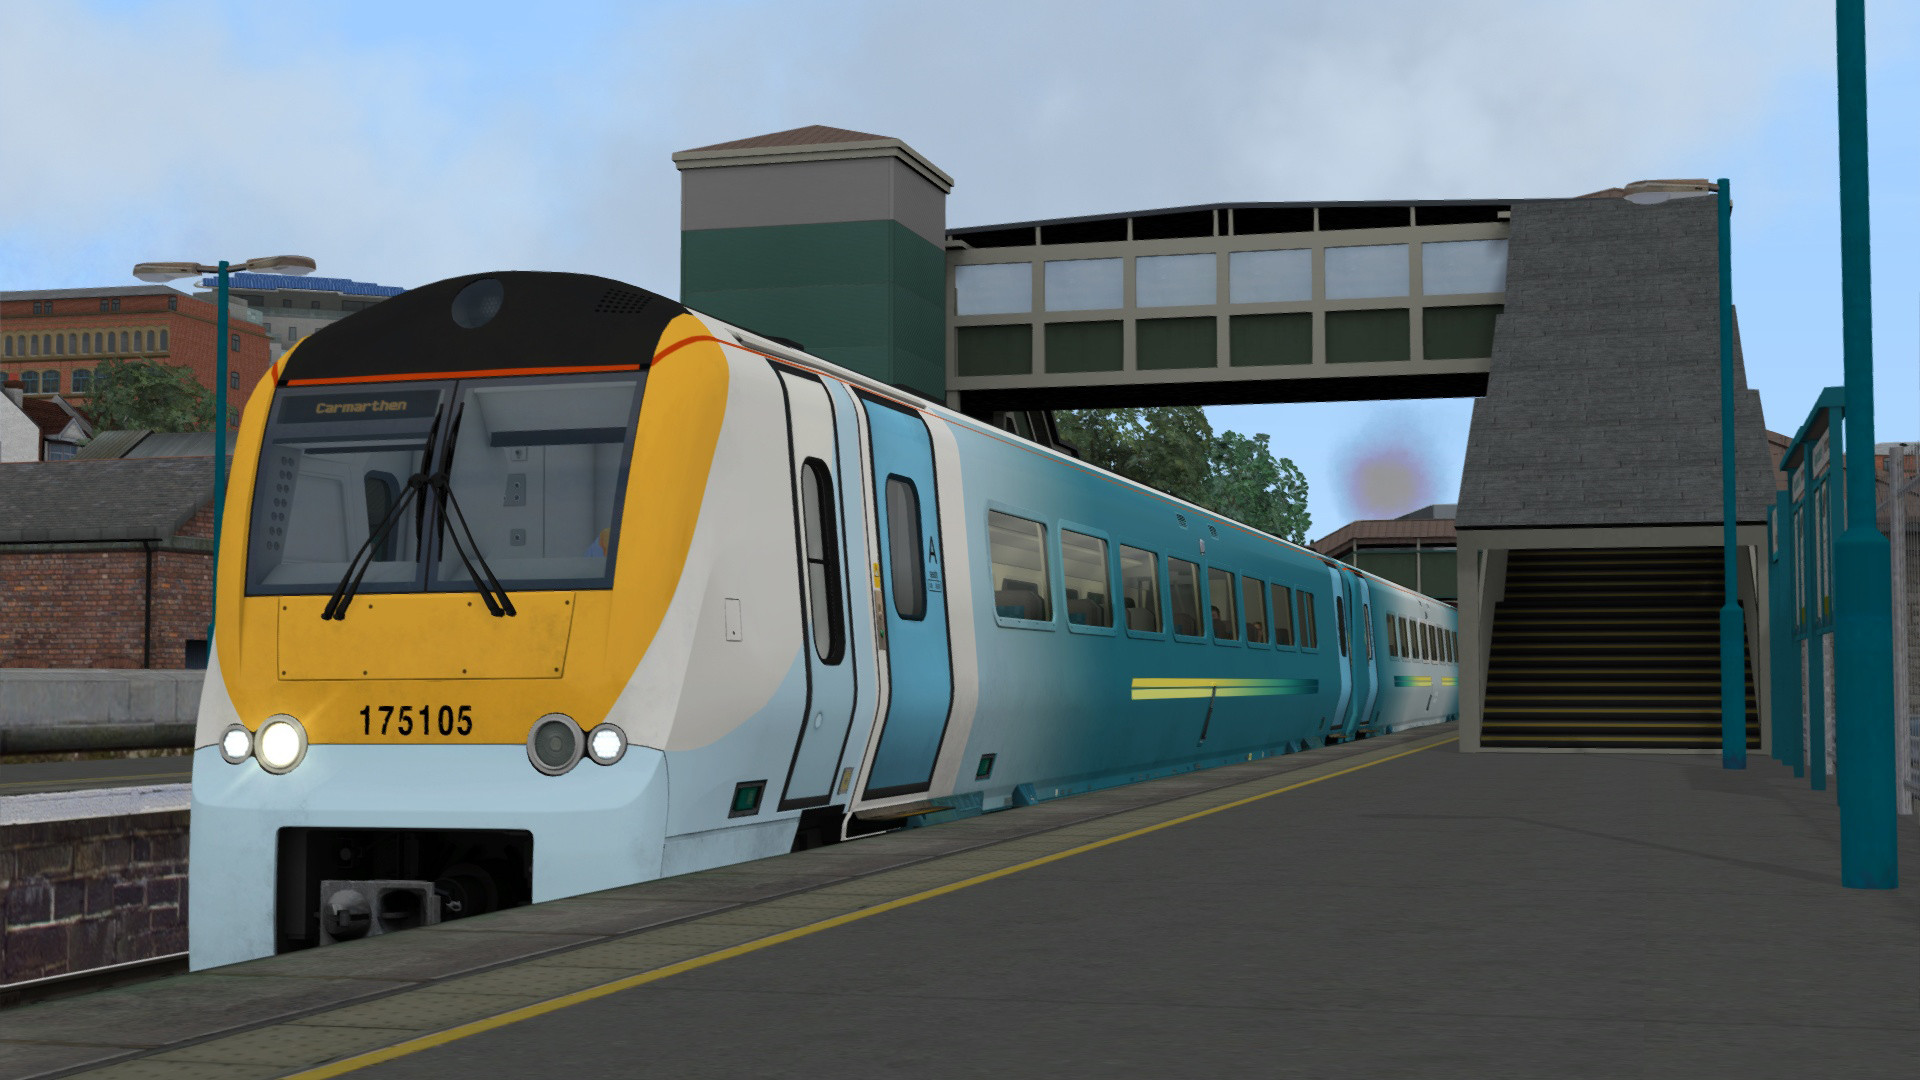 Train Simulator - South Wales Coastal: Bristol - Swansea Route Add-on DLC Steam CD Key 4.17$